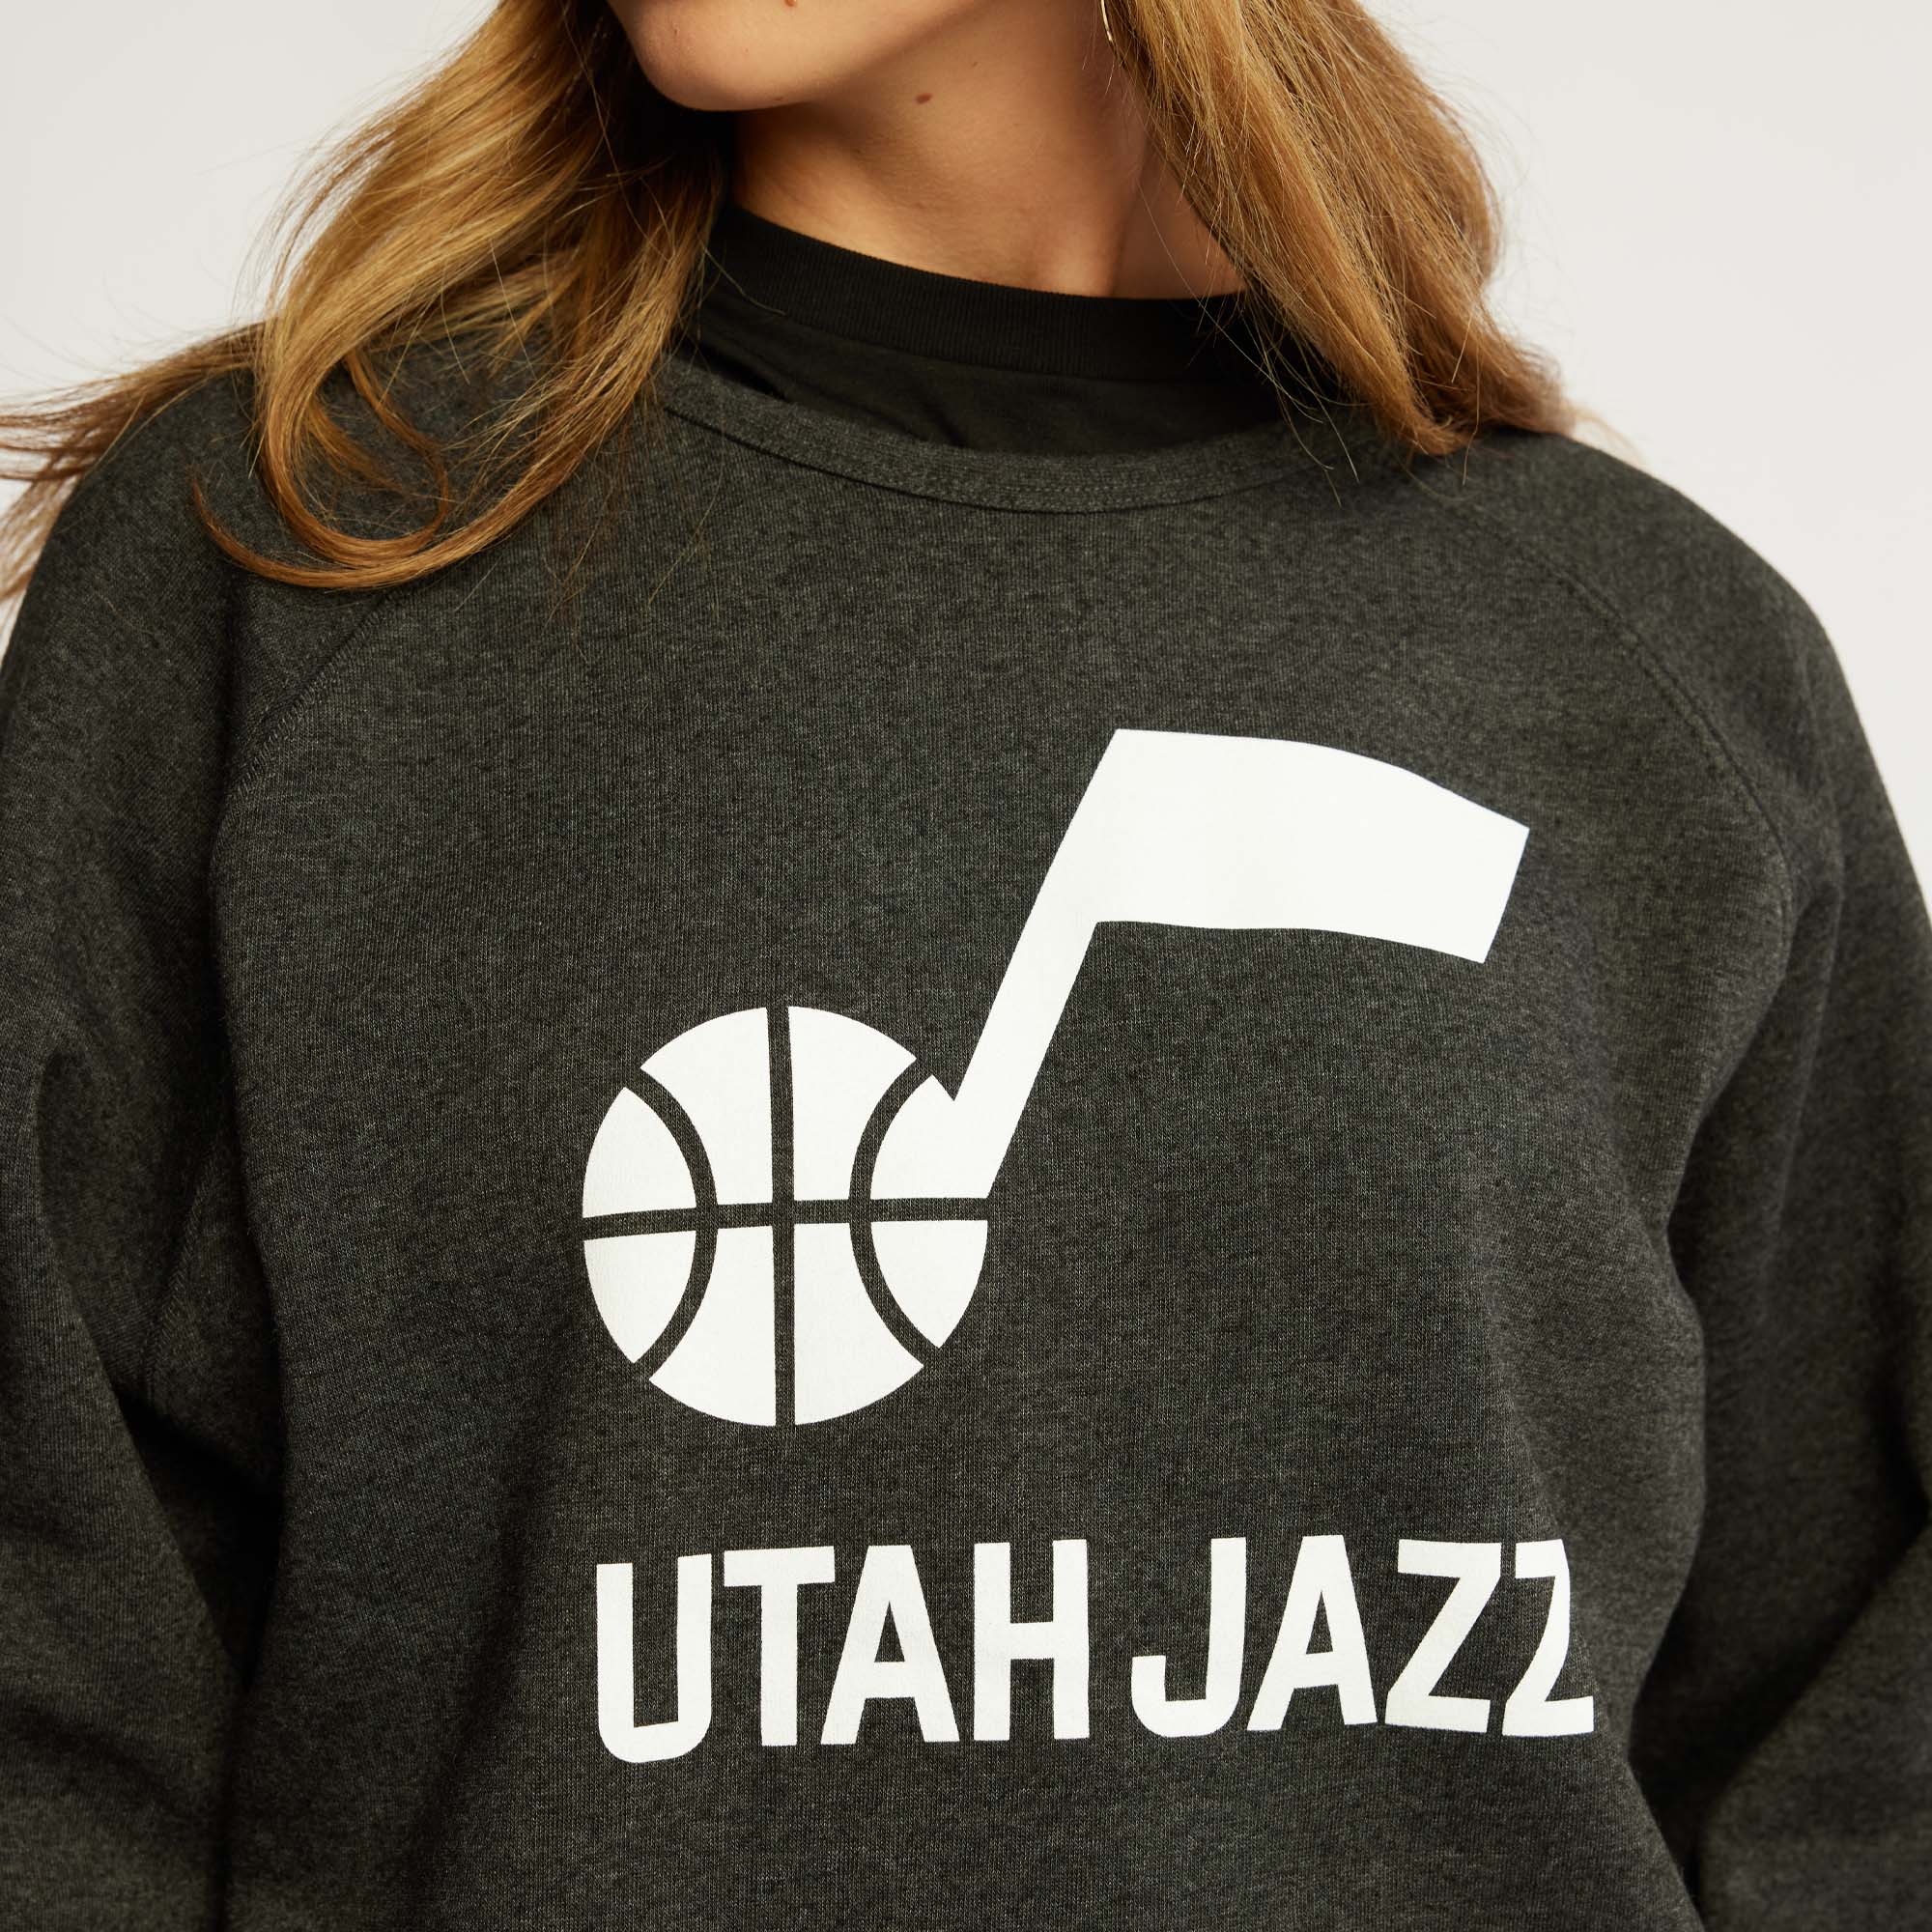 Mitchell & Ness – Utah Jazz Team Store